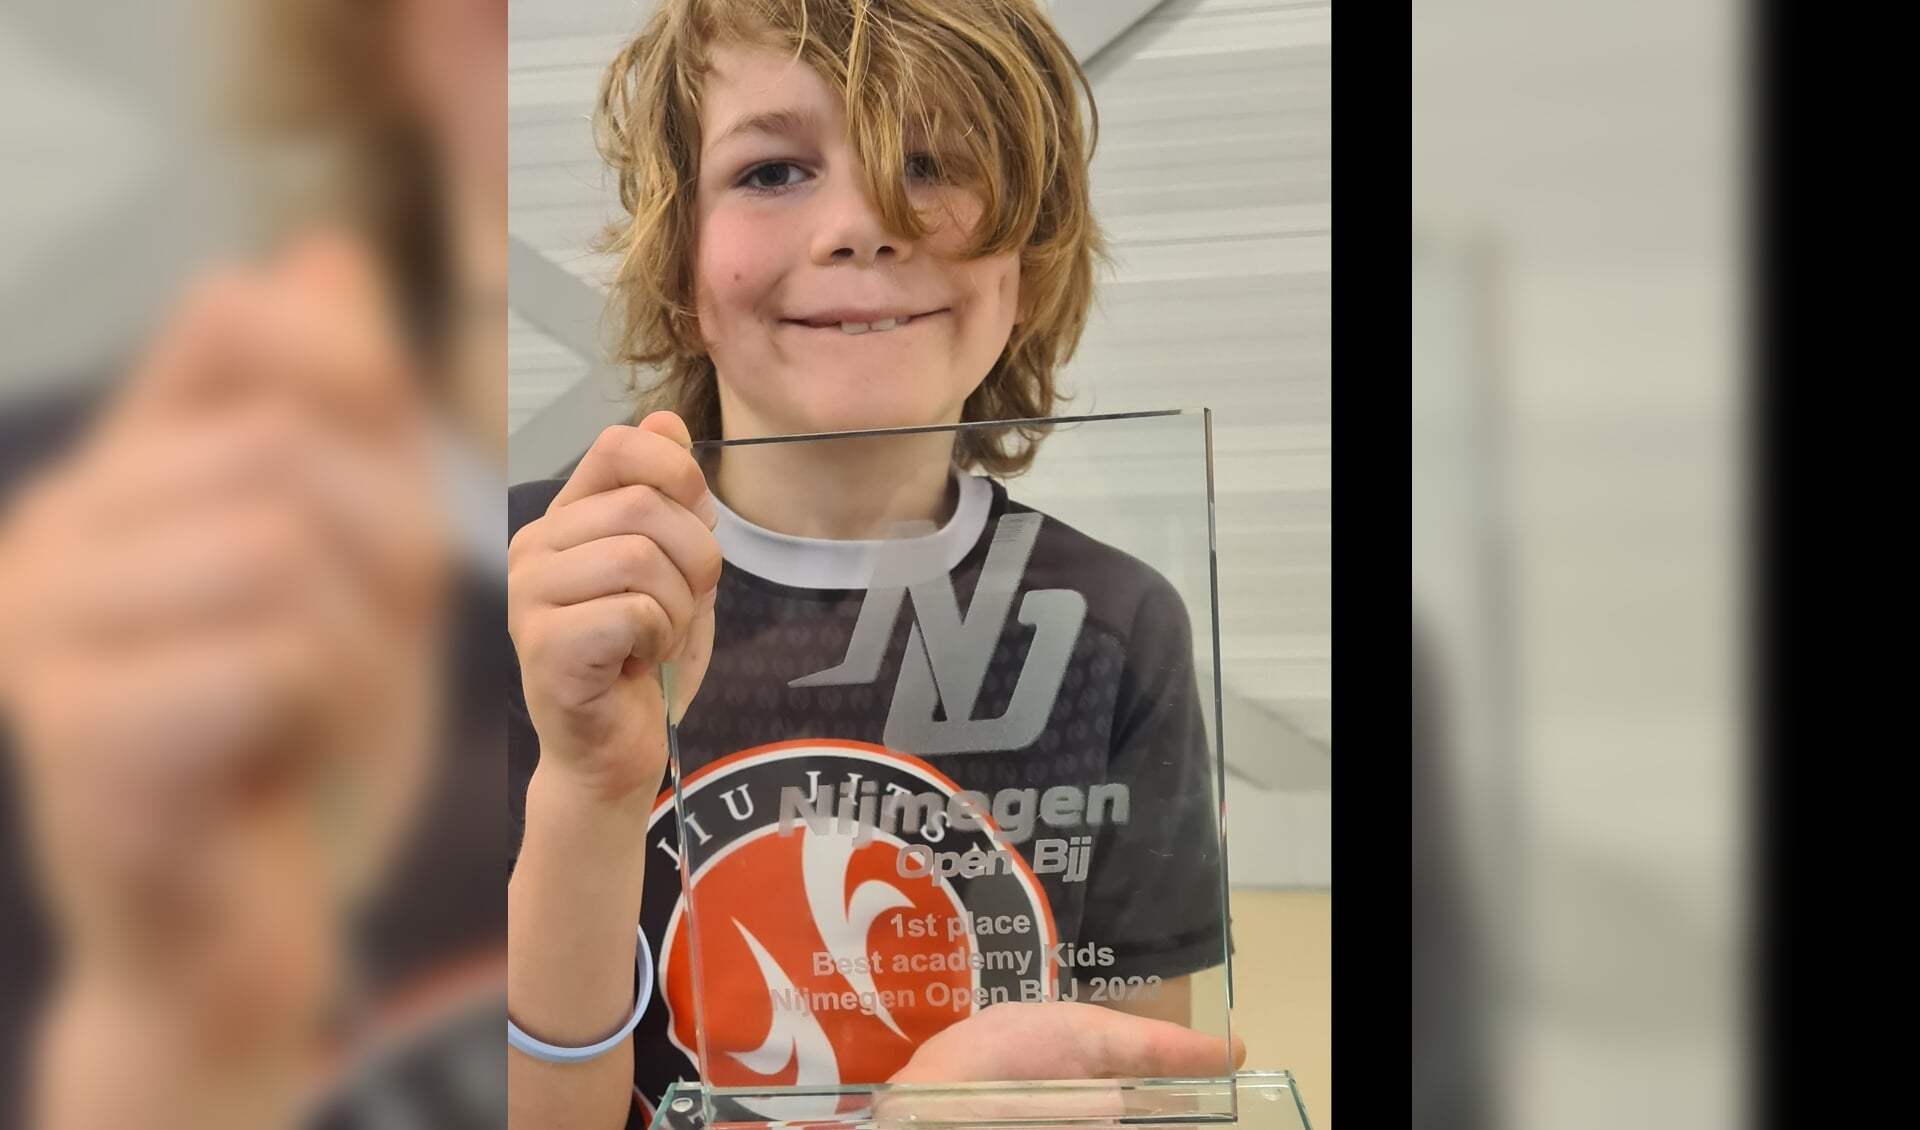 1st pkace Best Academy Kids Nijmegen Open BJJ 2023